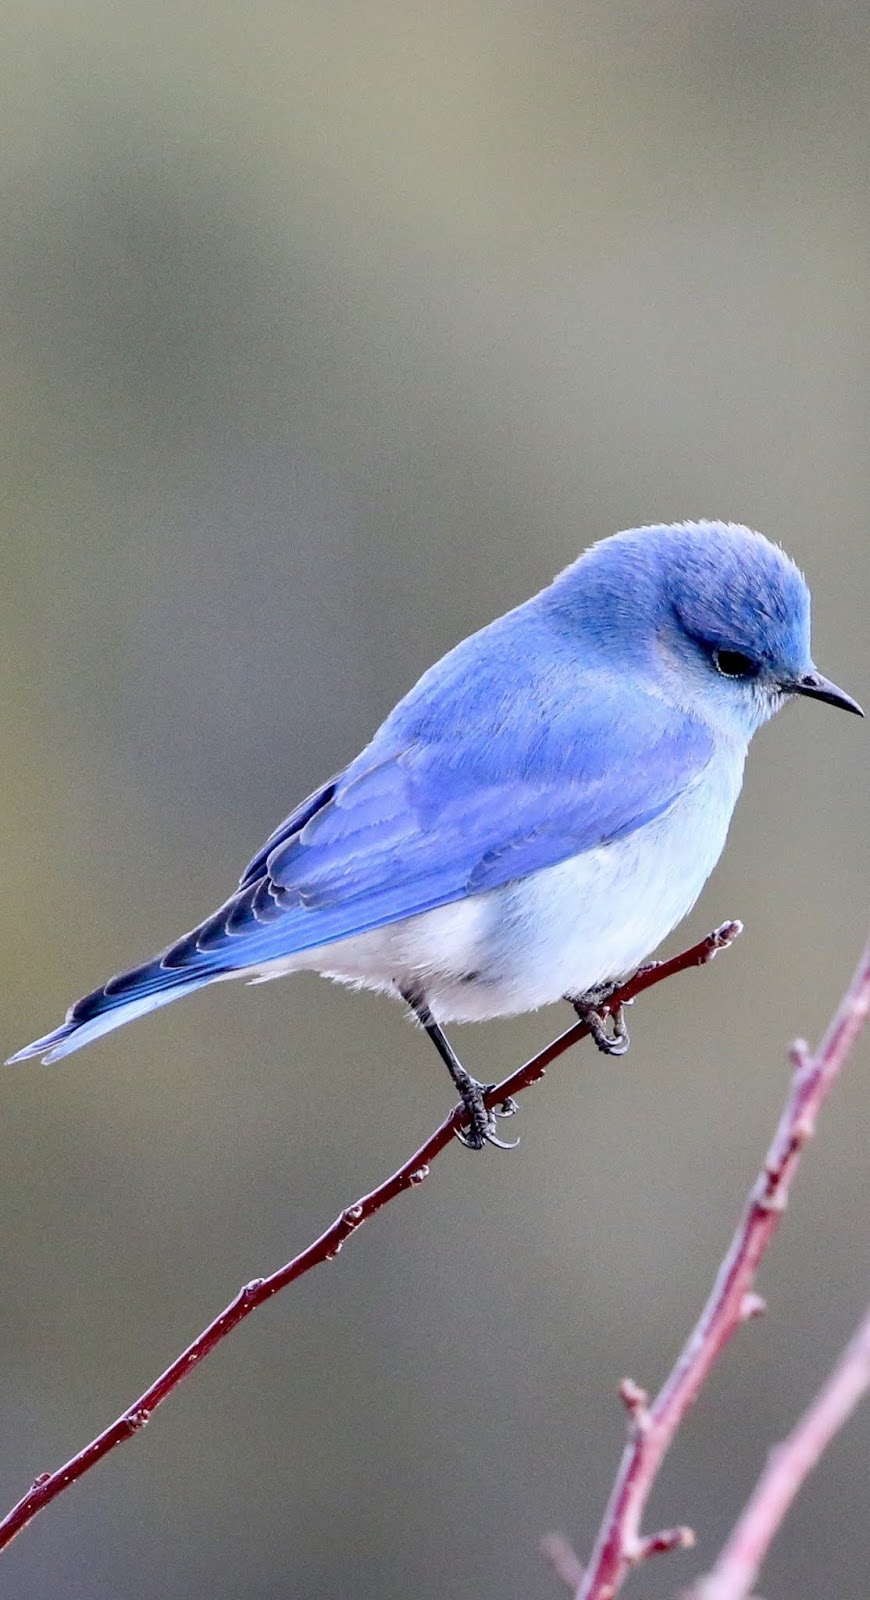 A cute little blue bird.